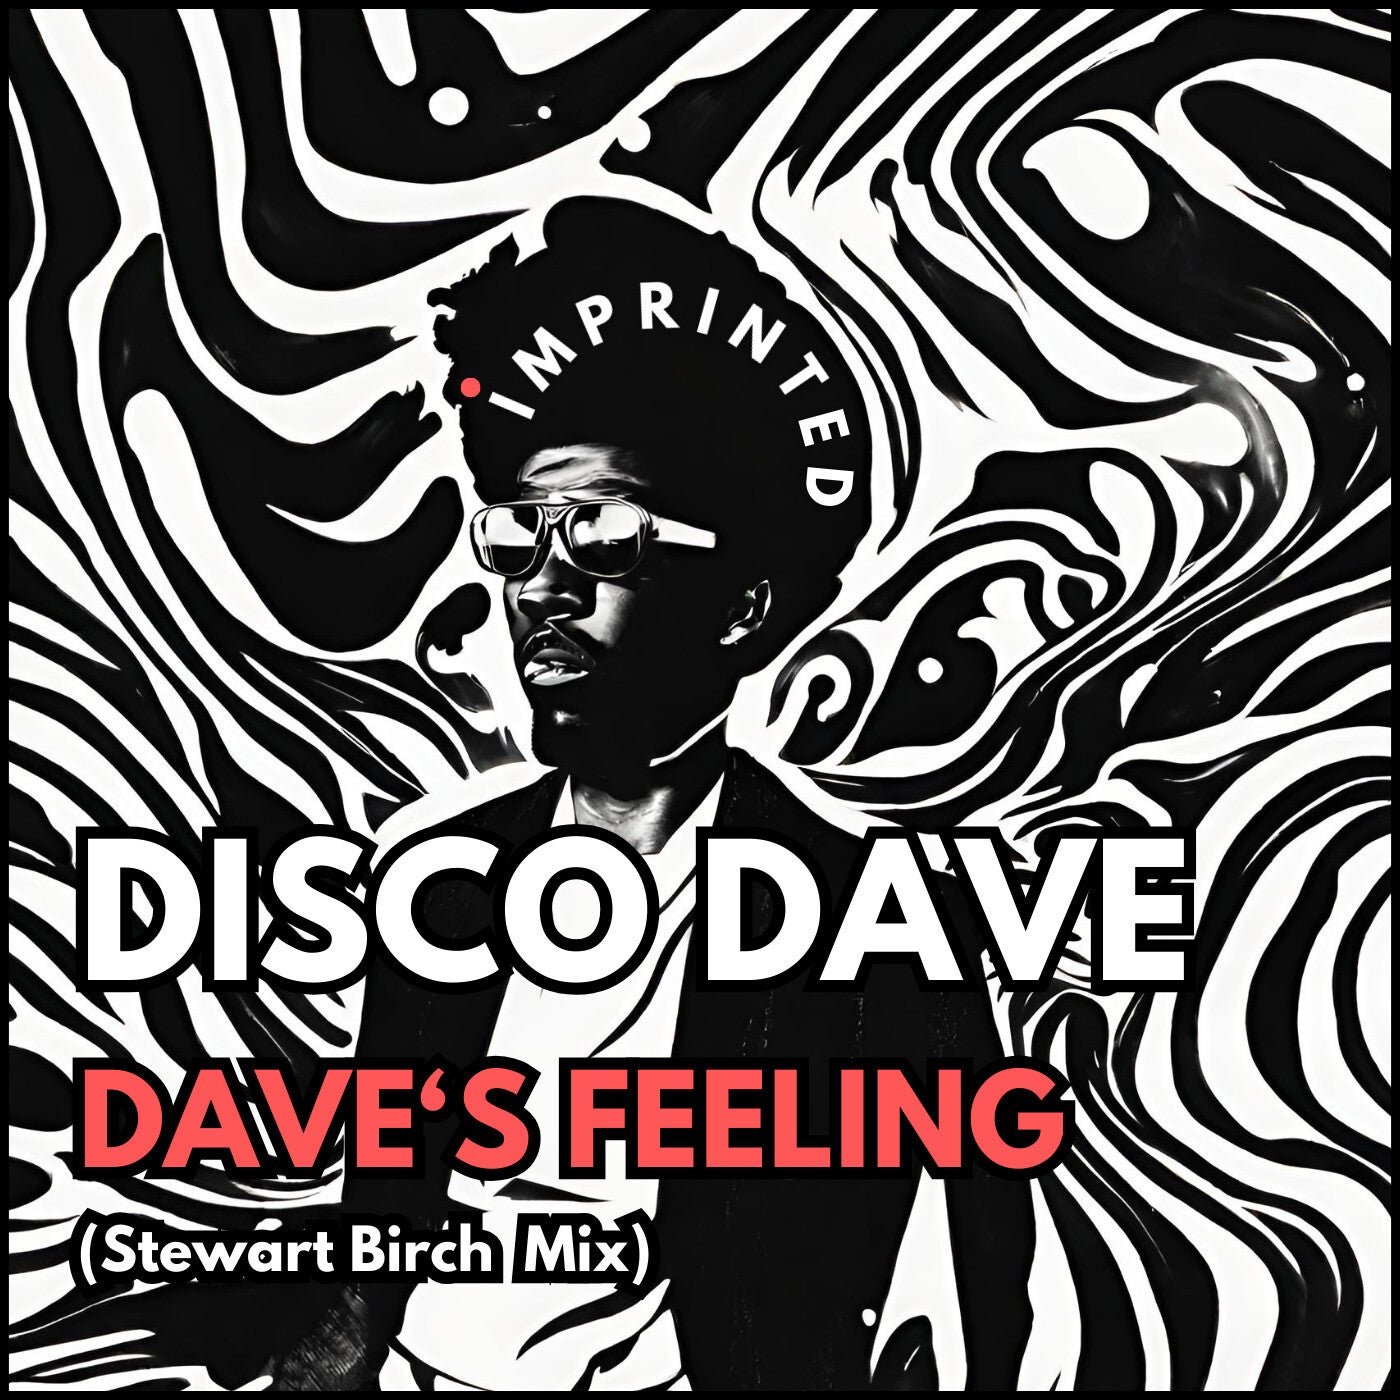 Dave's Feeling (Stewart Birch Mix)